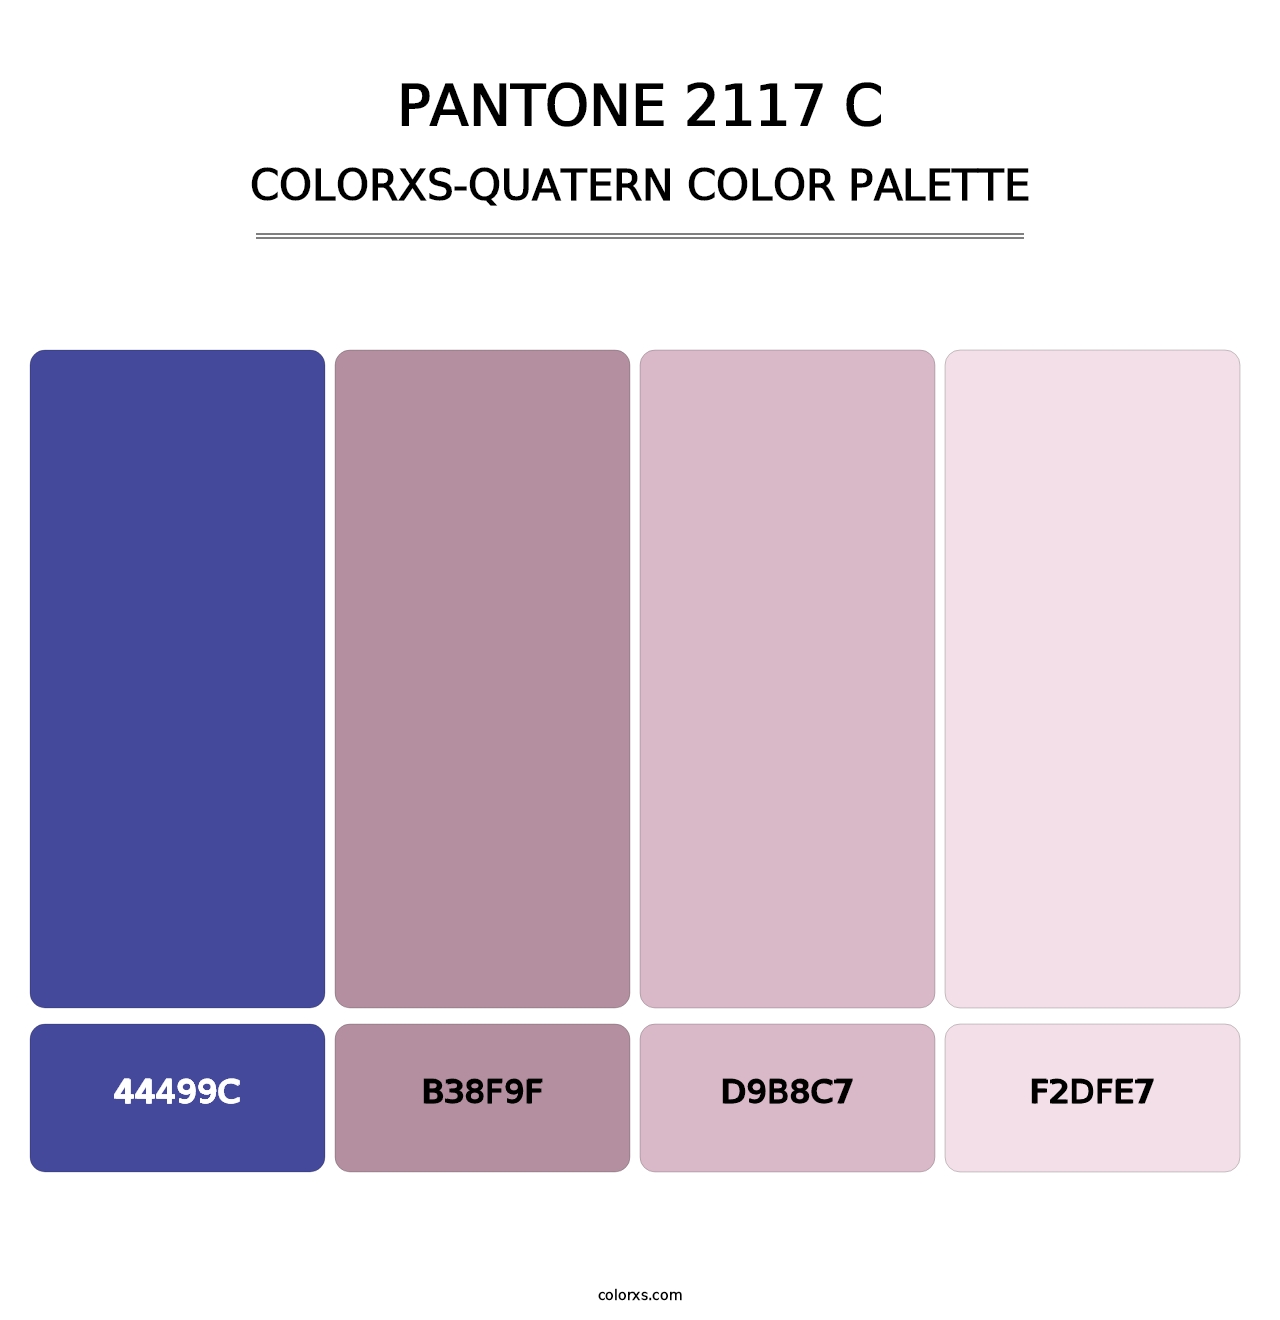 PANTONE 2117 C - Colorxs Quatern Palette